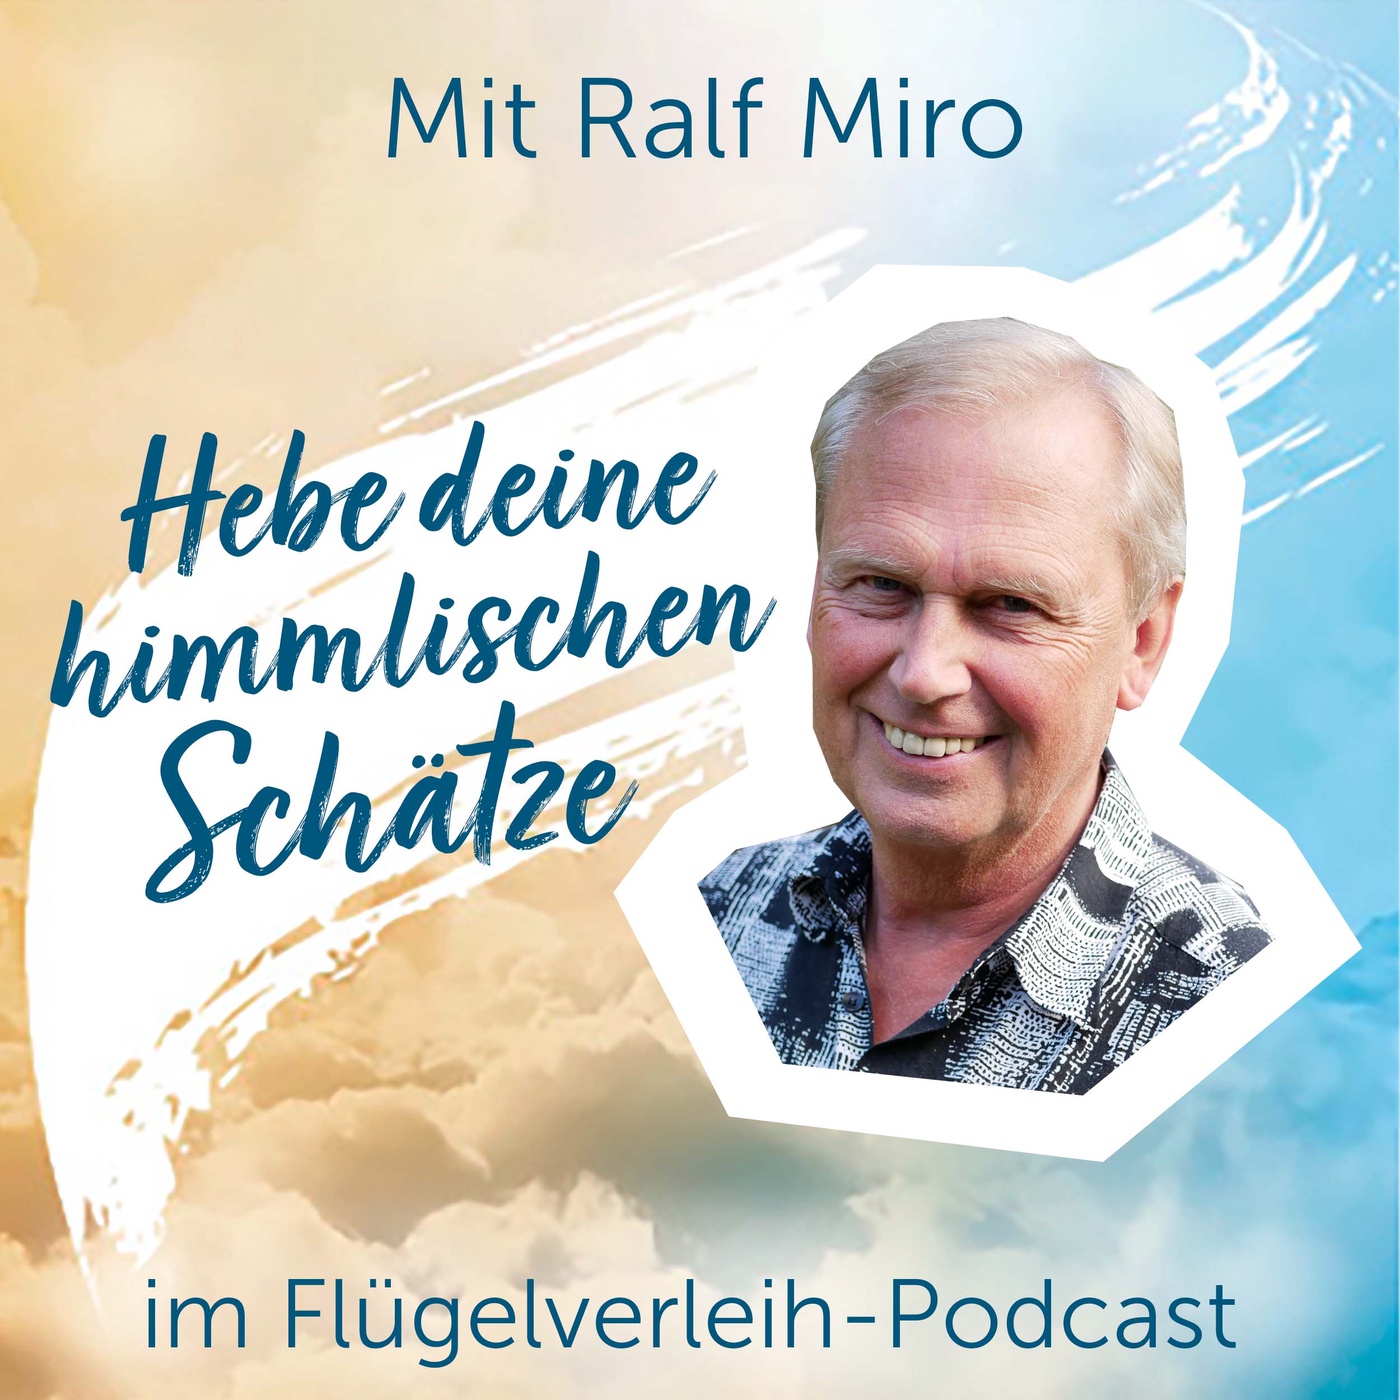 Hebe deine himmlischen Schätze – mit Ralf Miro